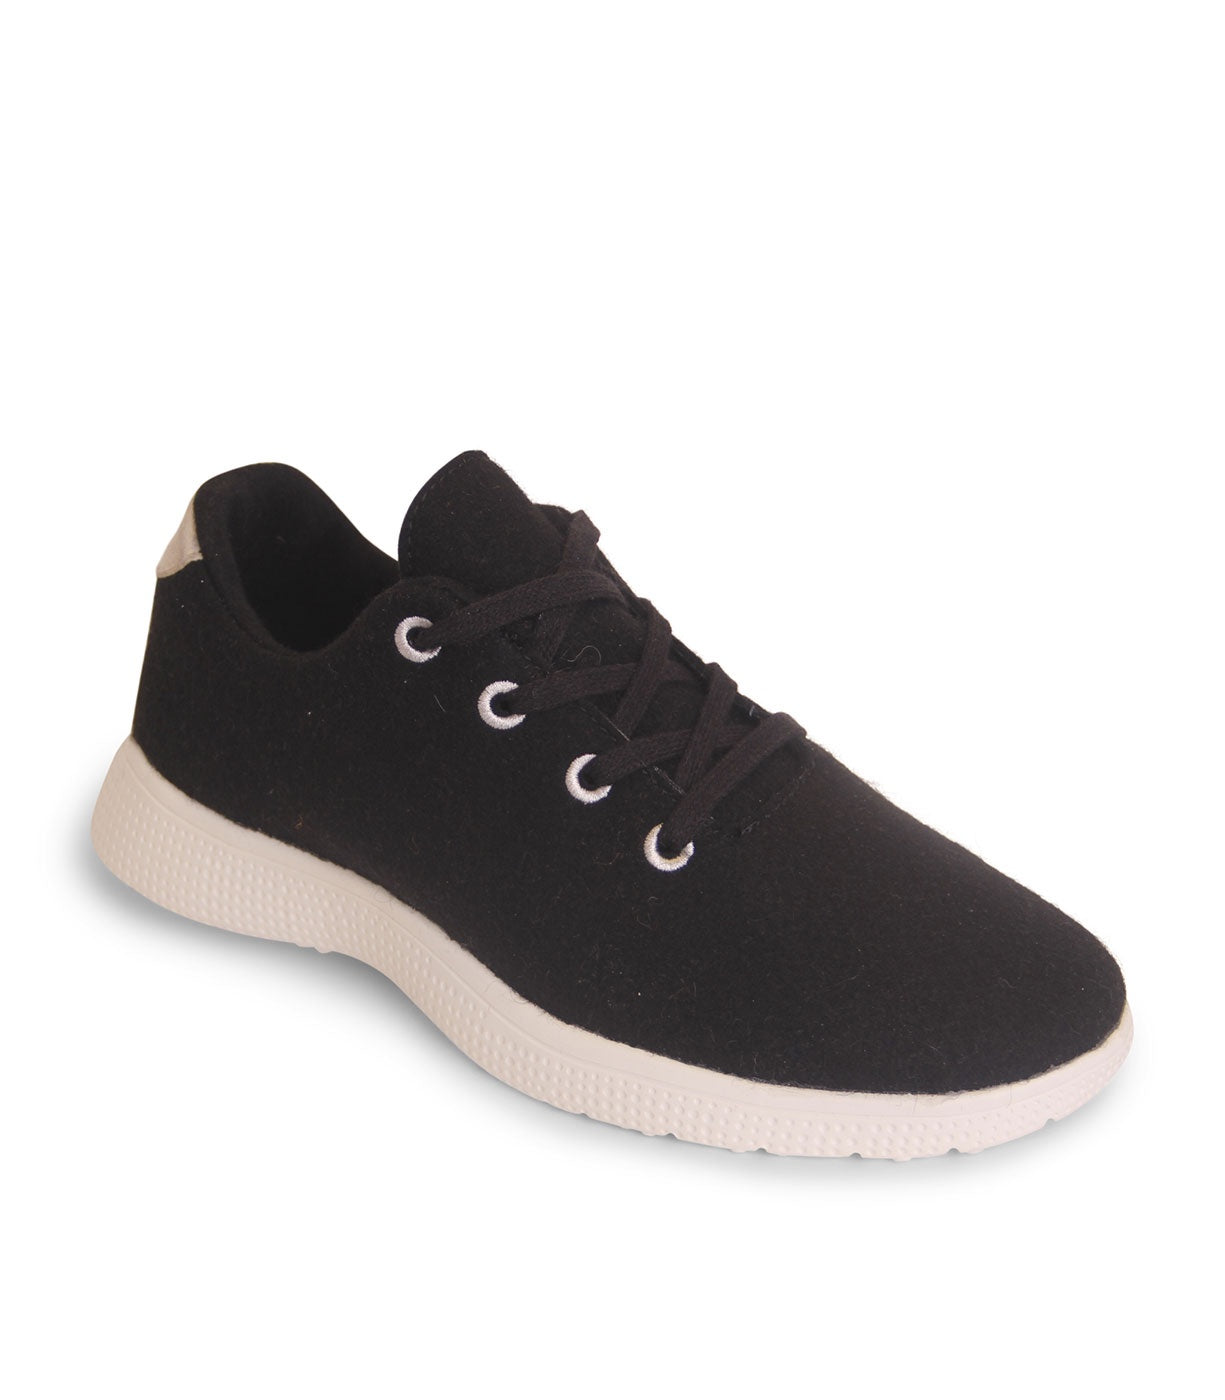 Egos Shoes Merino Wool Sneaker Black